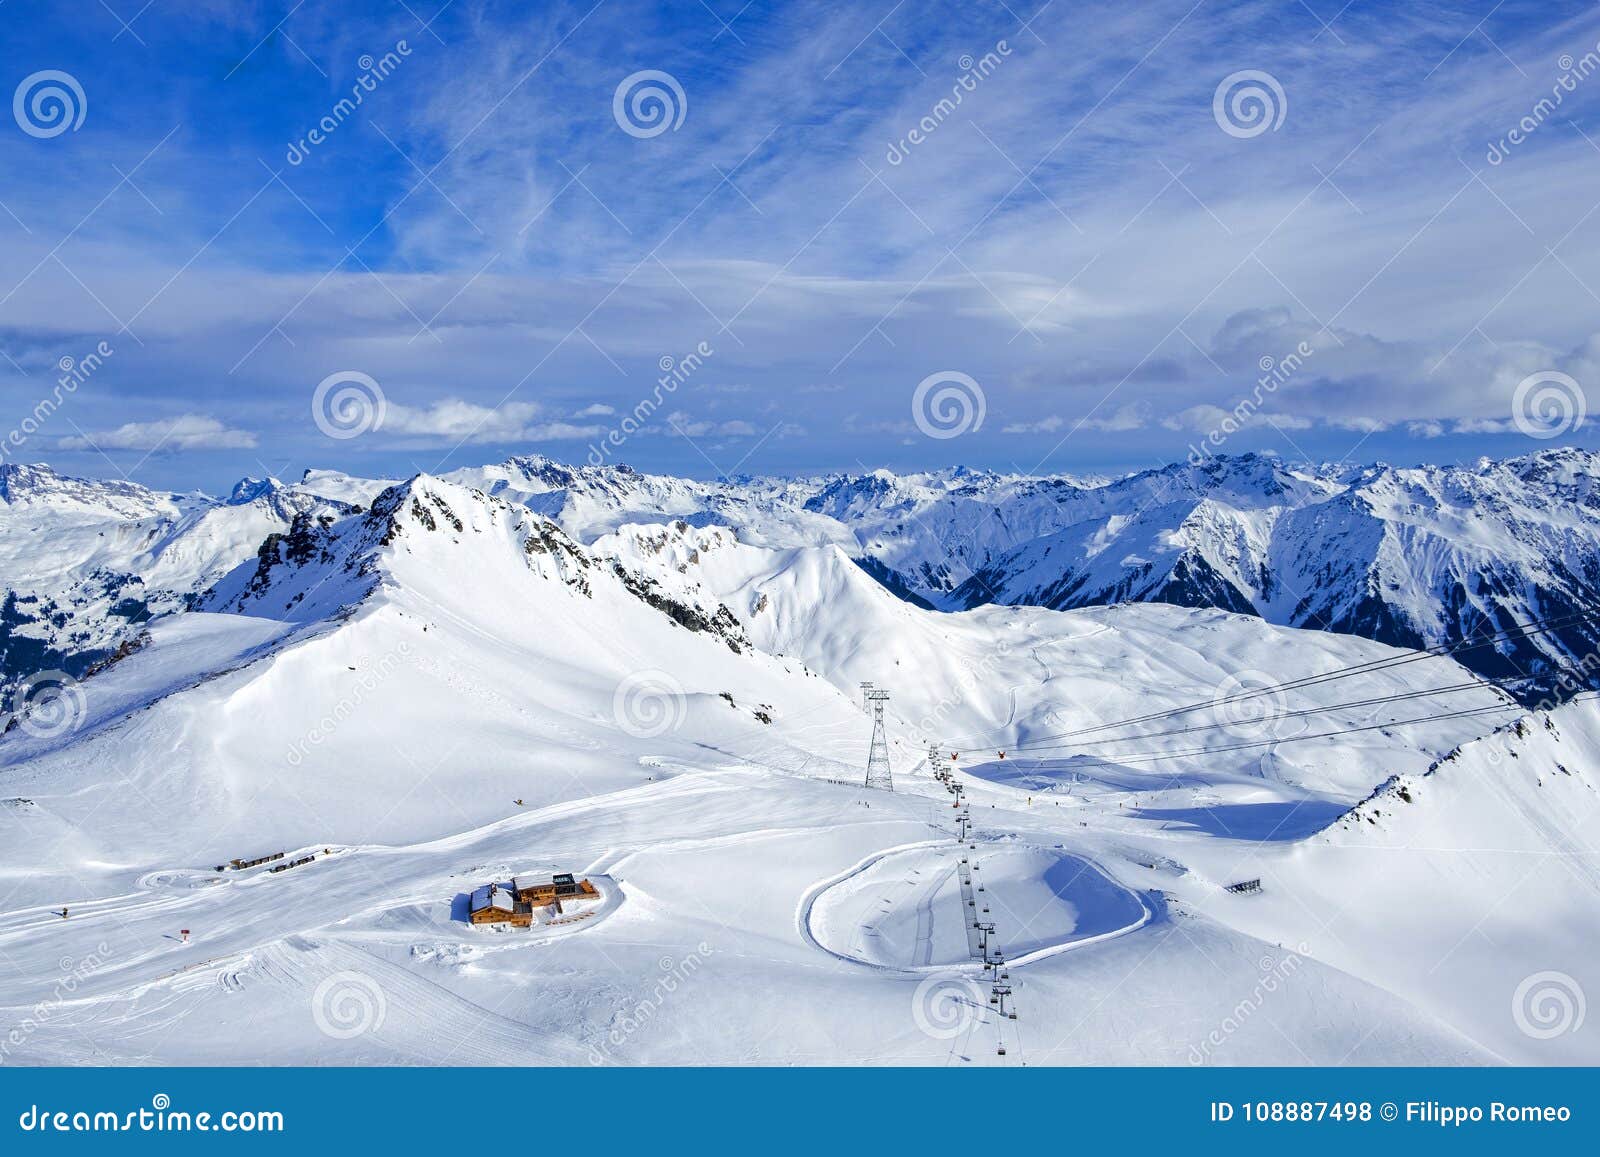 davos mountains skiing resort